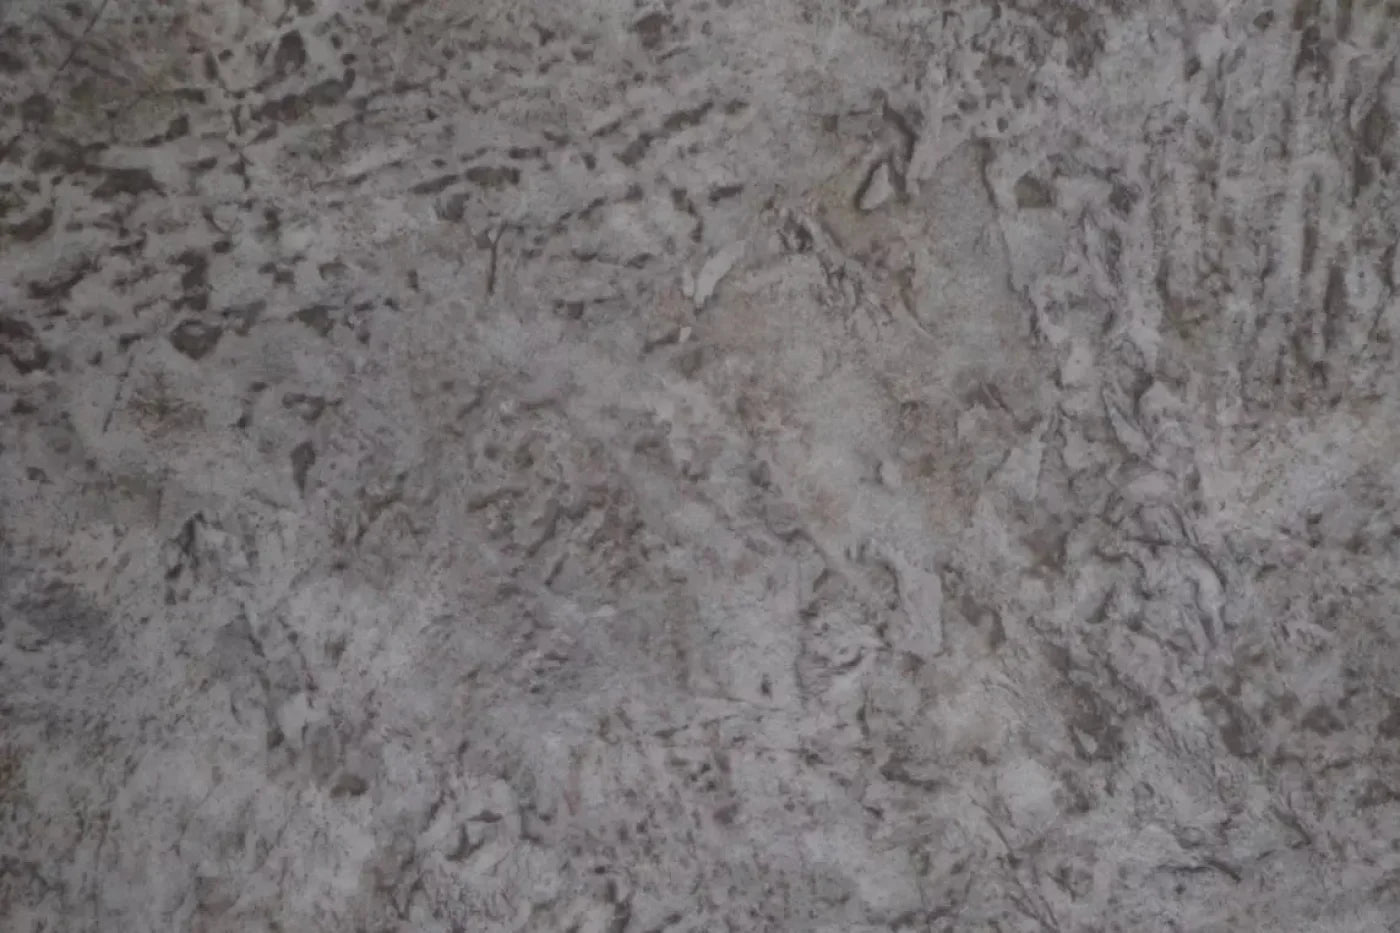 Dirty 5X4 Rubbermat Floor ( 60 X 48 Inch ) Backdrop